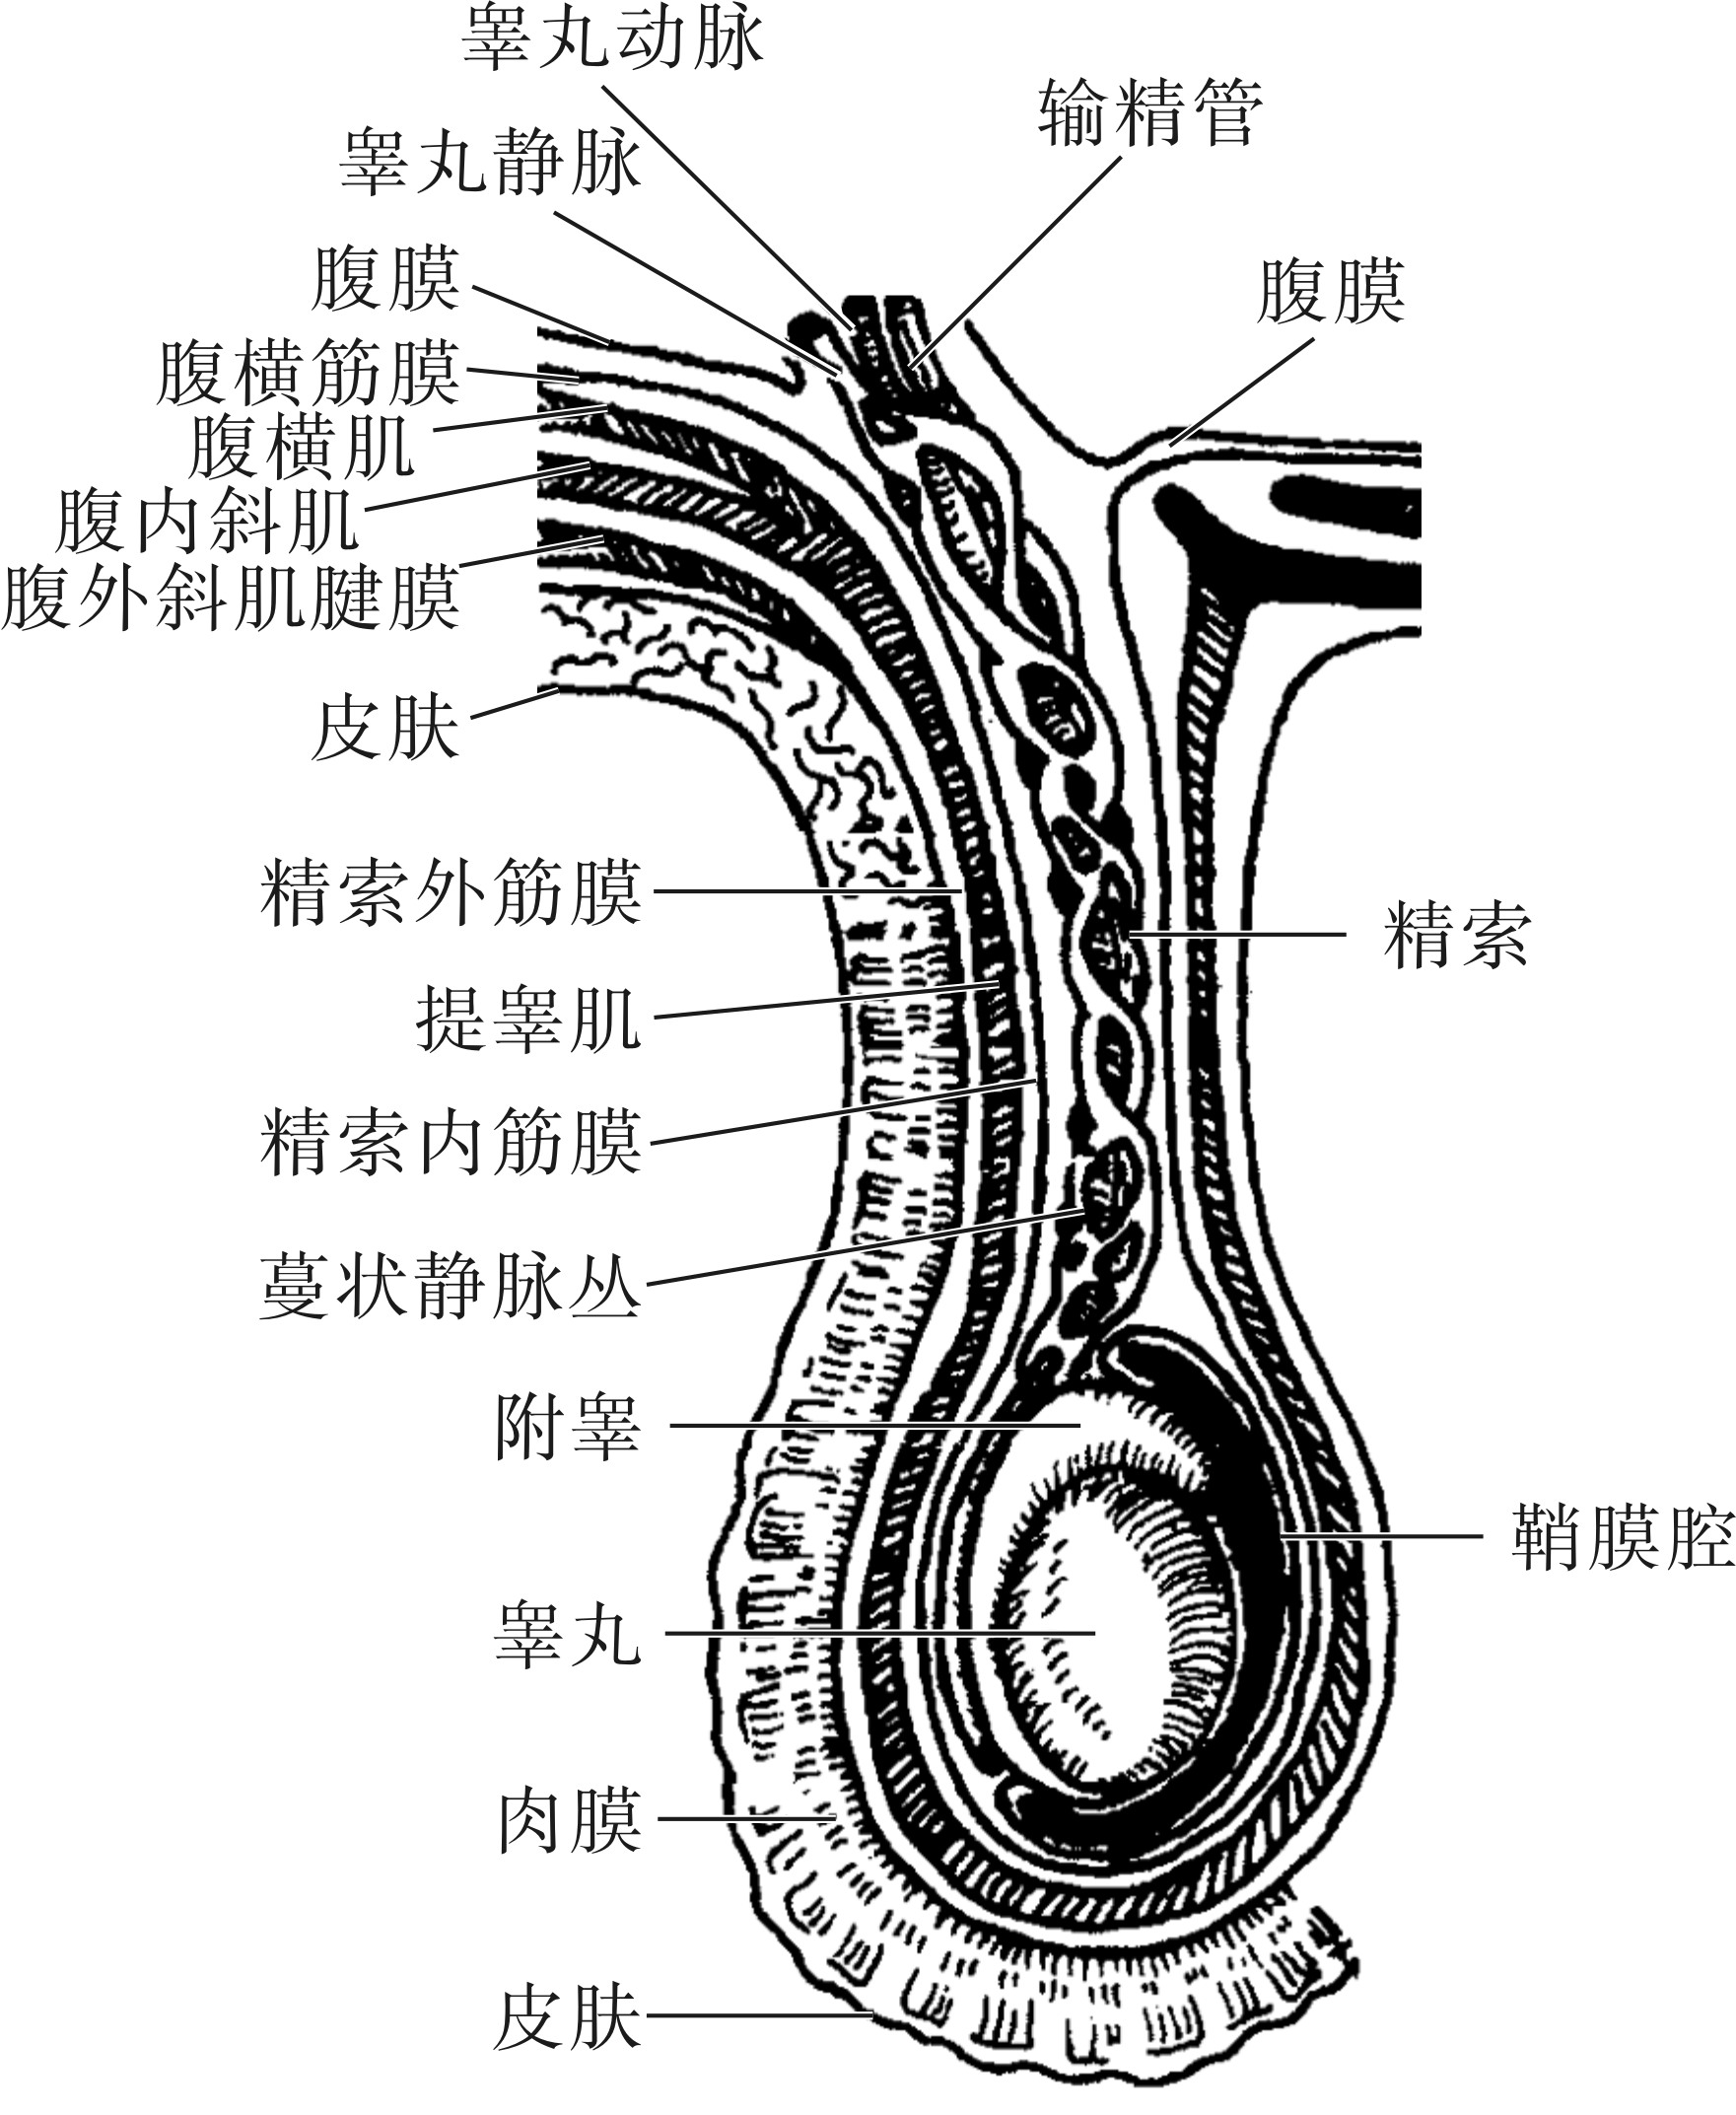 男性外生殖器的血管和神经-外科学-医学